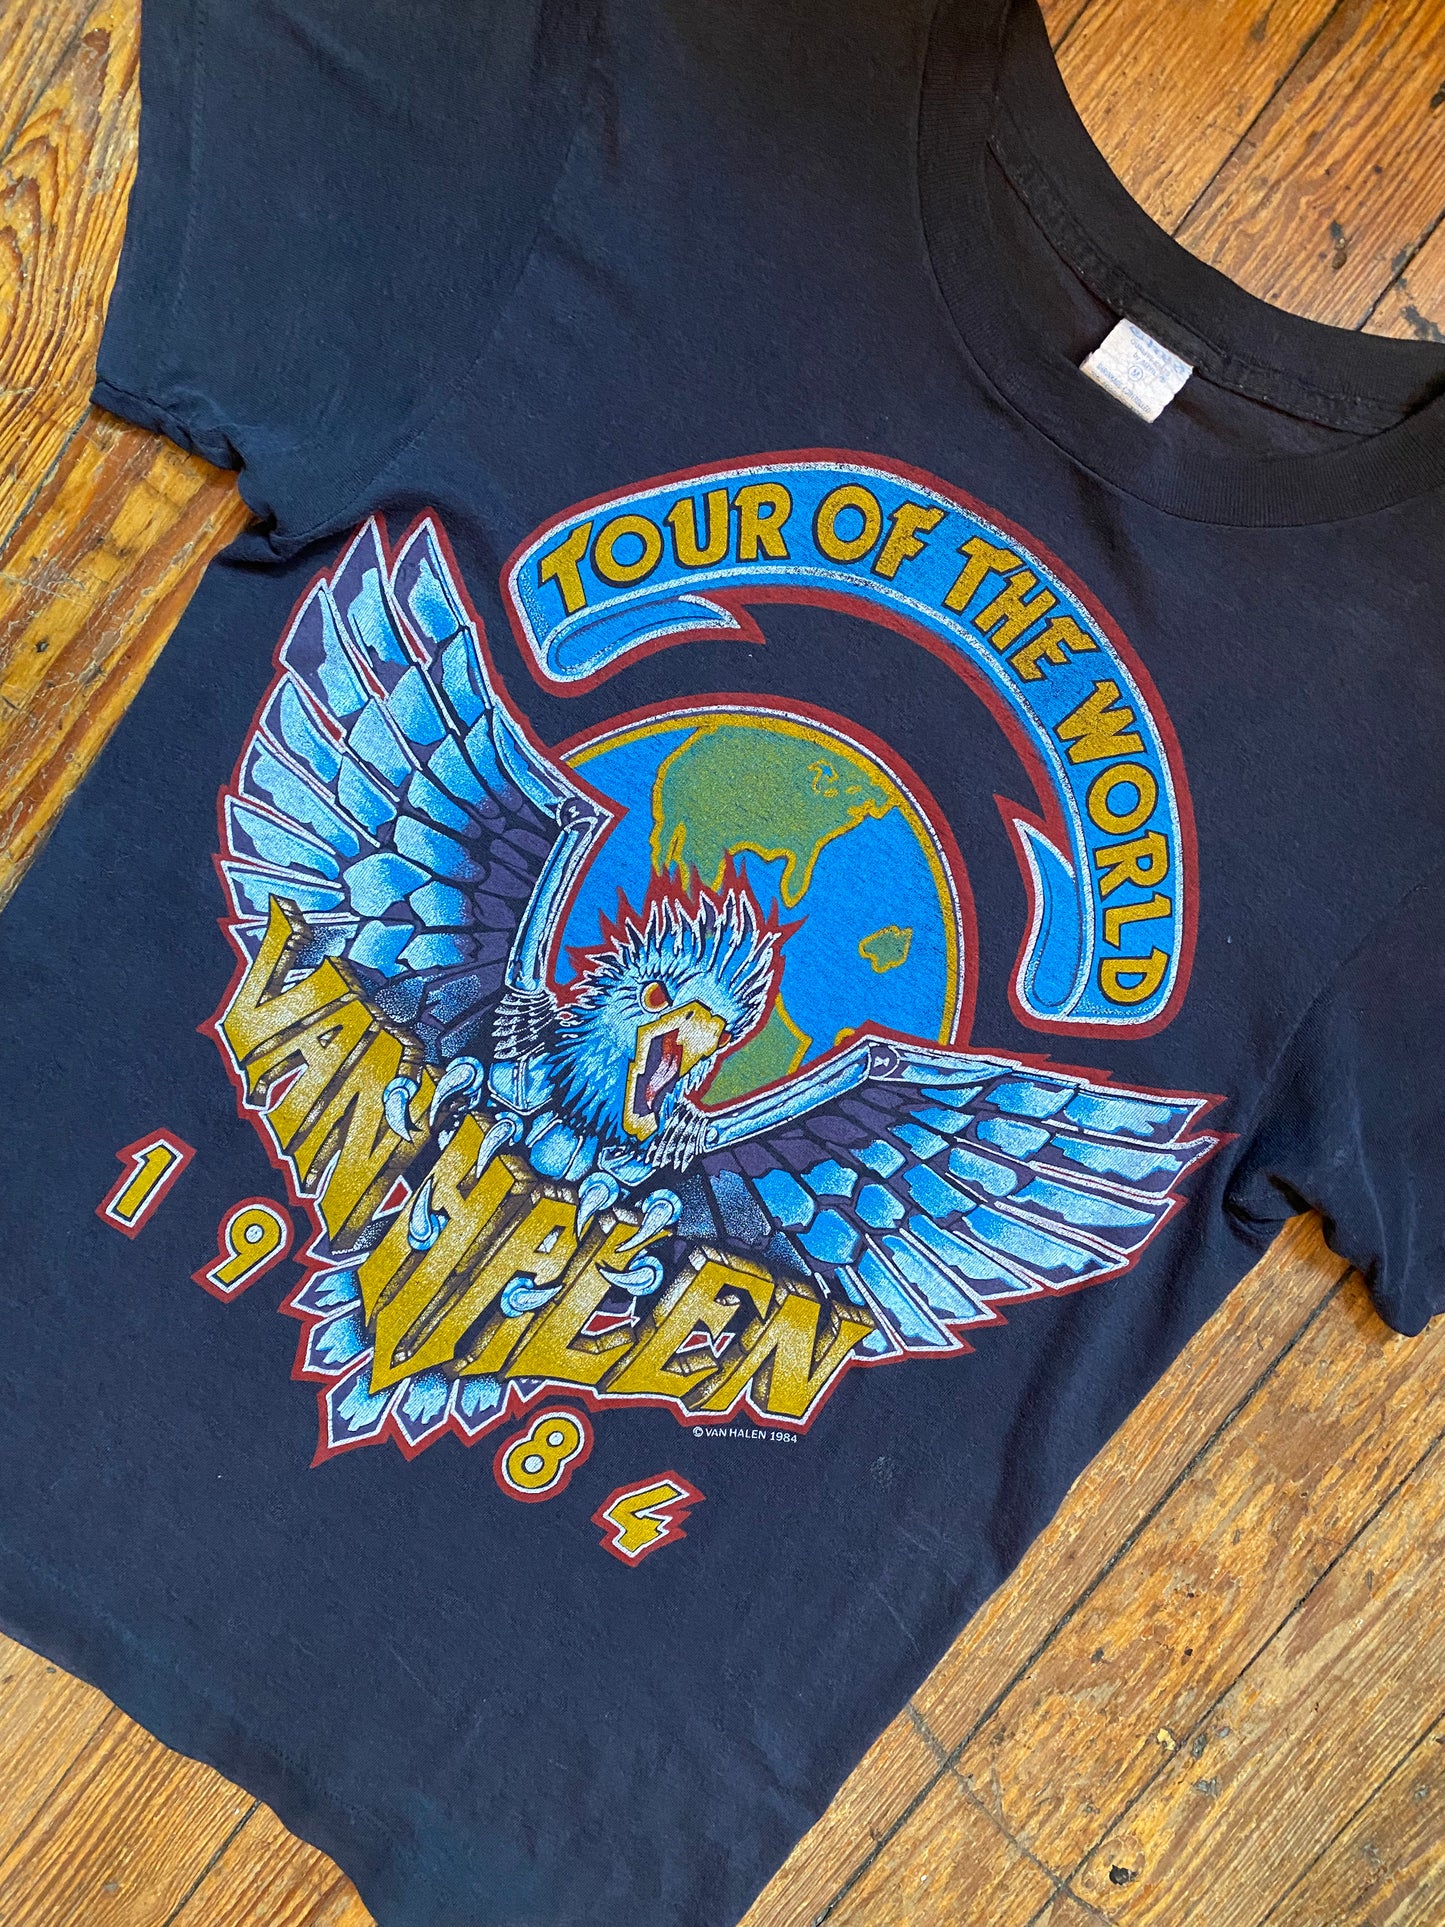 Vintage 1984 Van Halen “Tour of the World” Tour Shirt